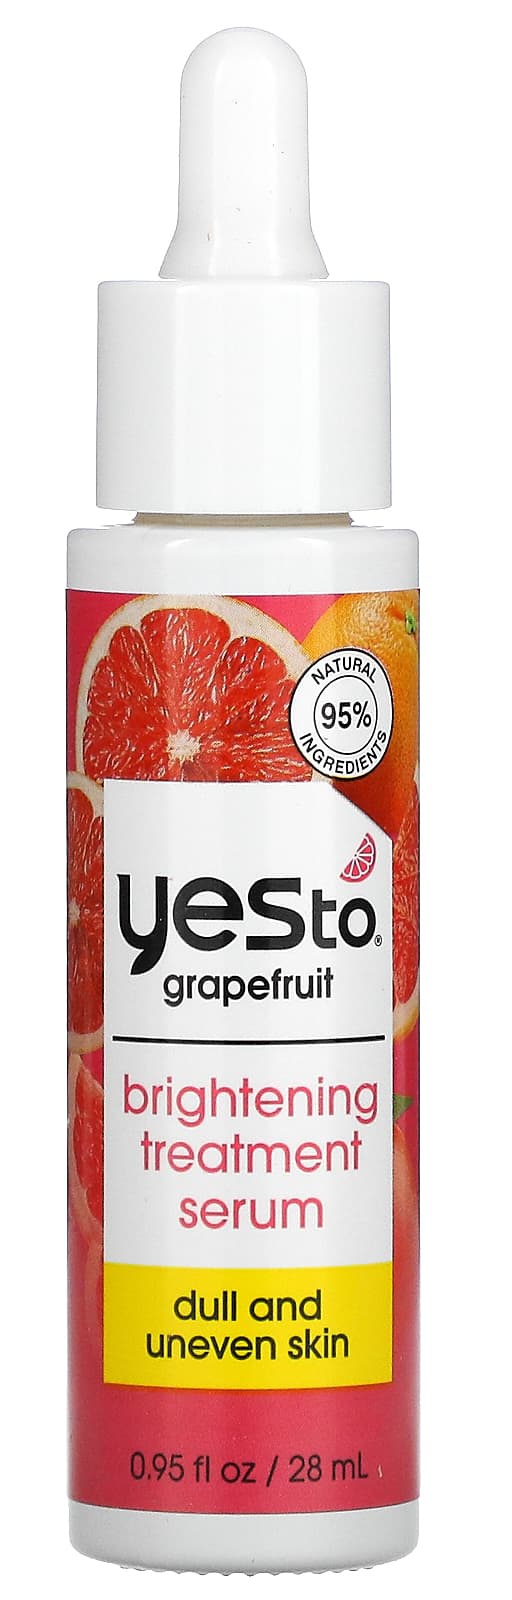 Yes to Grapefruit Brightening Treatment Serum